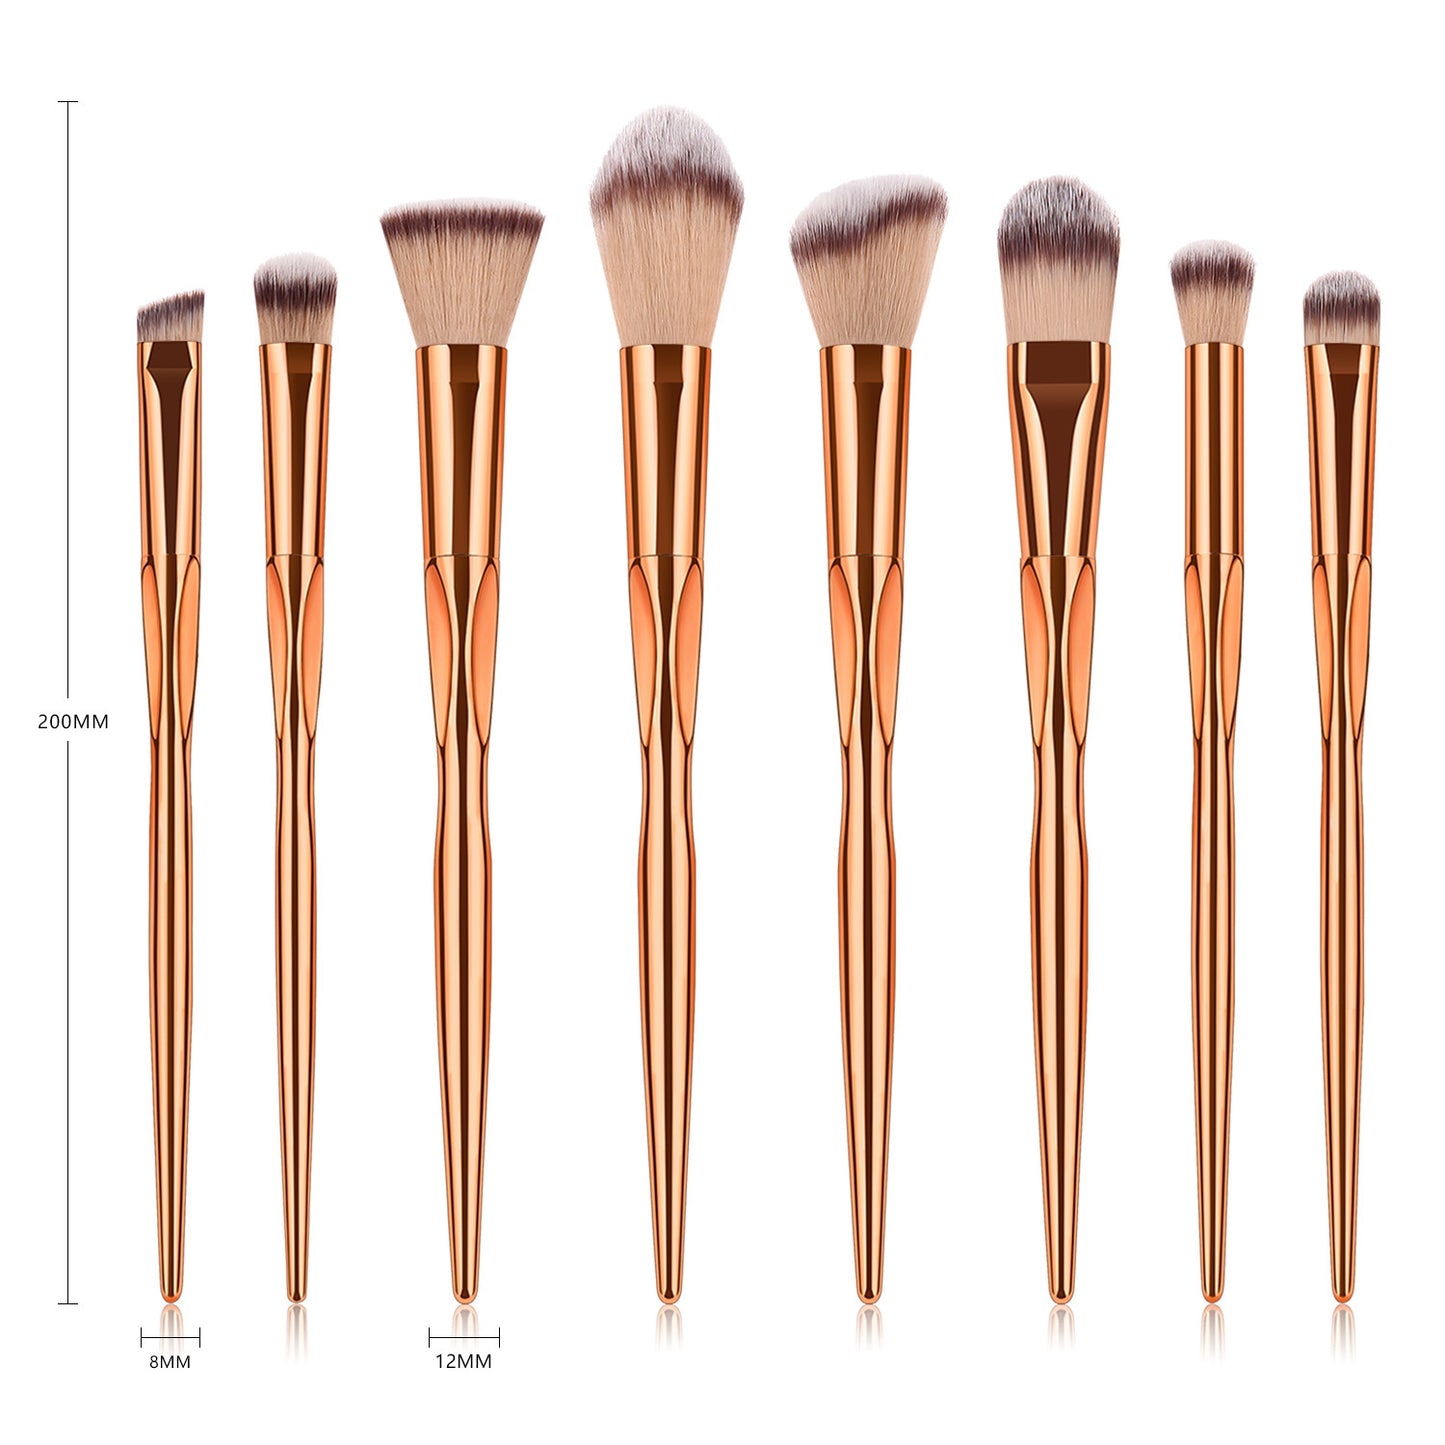 8 Makeup Brush Sets